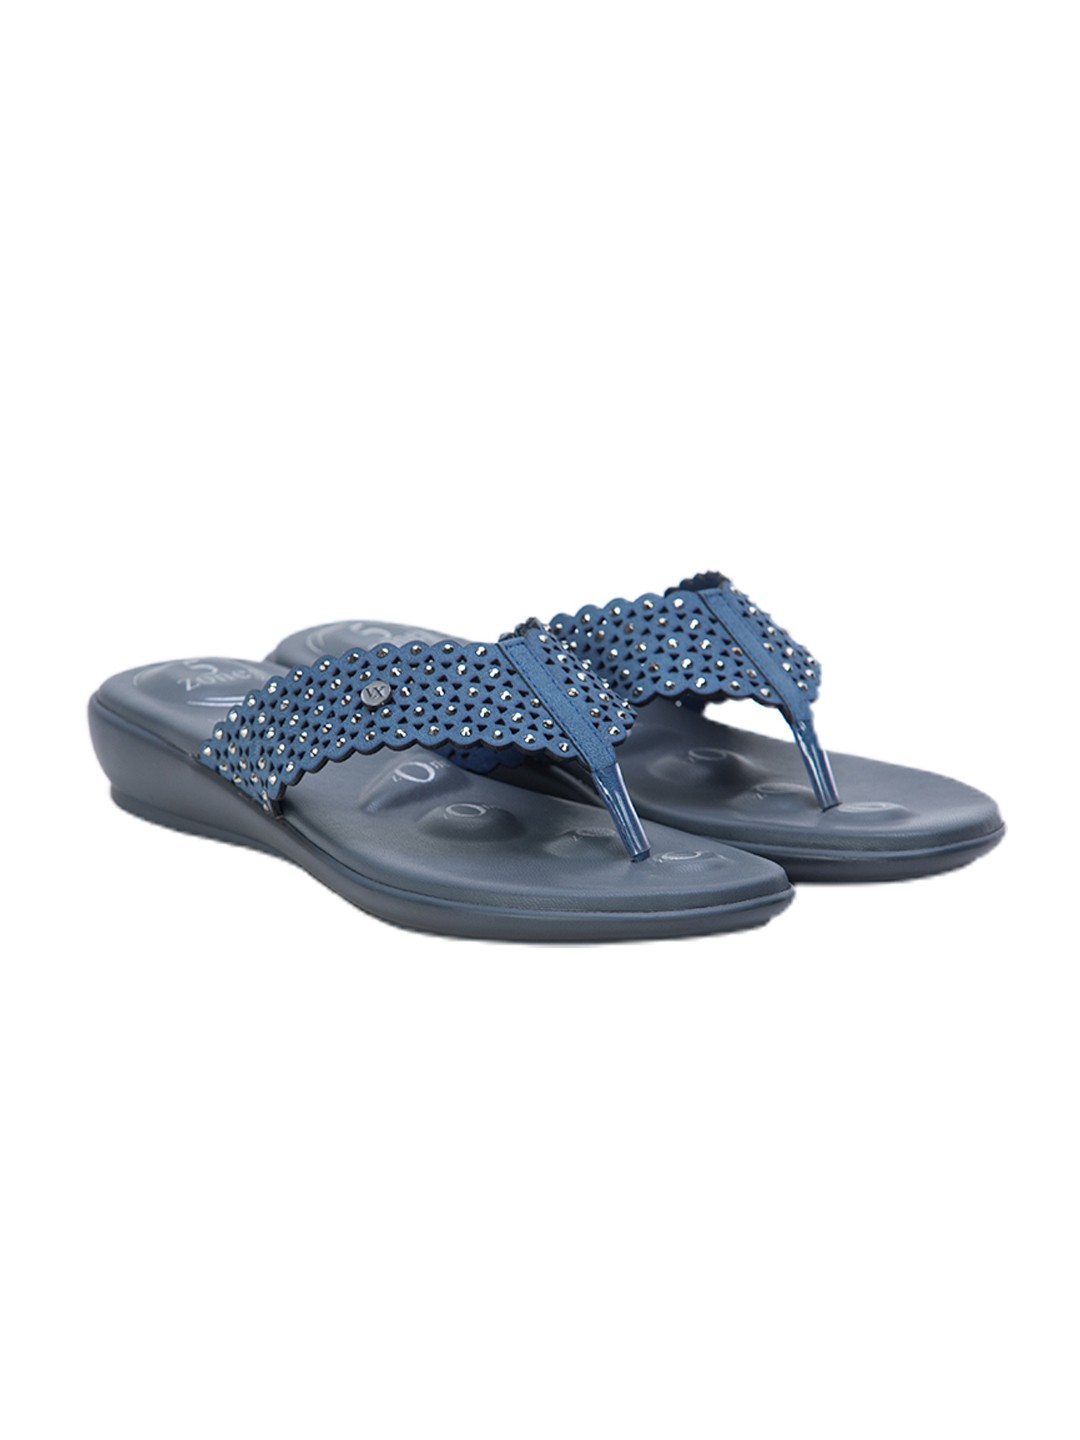 Buy Von Wellx Germany Comfort Gleam Blue Slippers Online in Dehradun